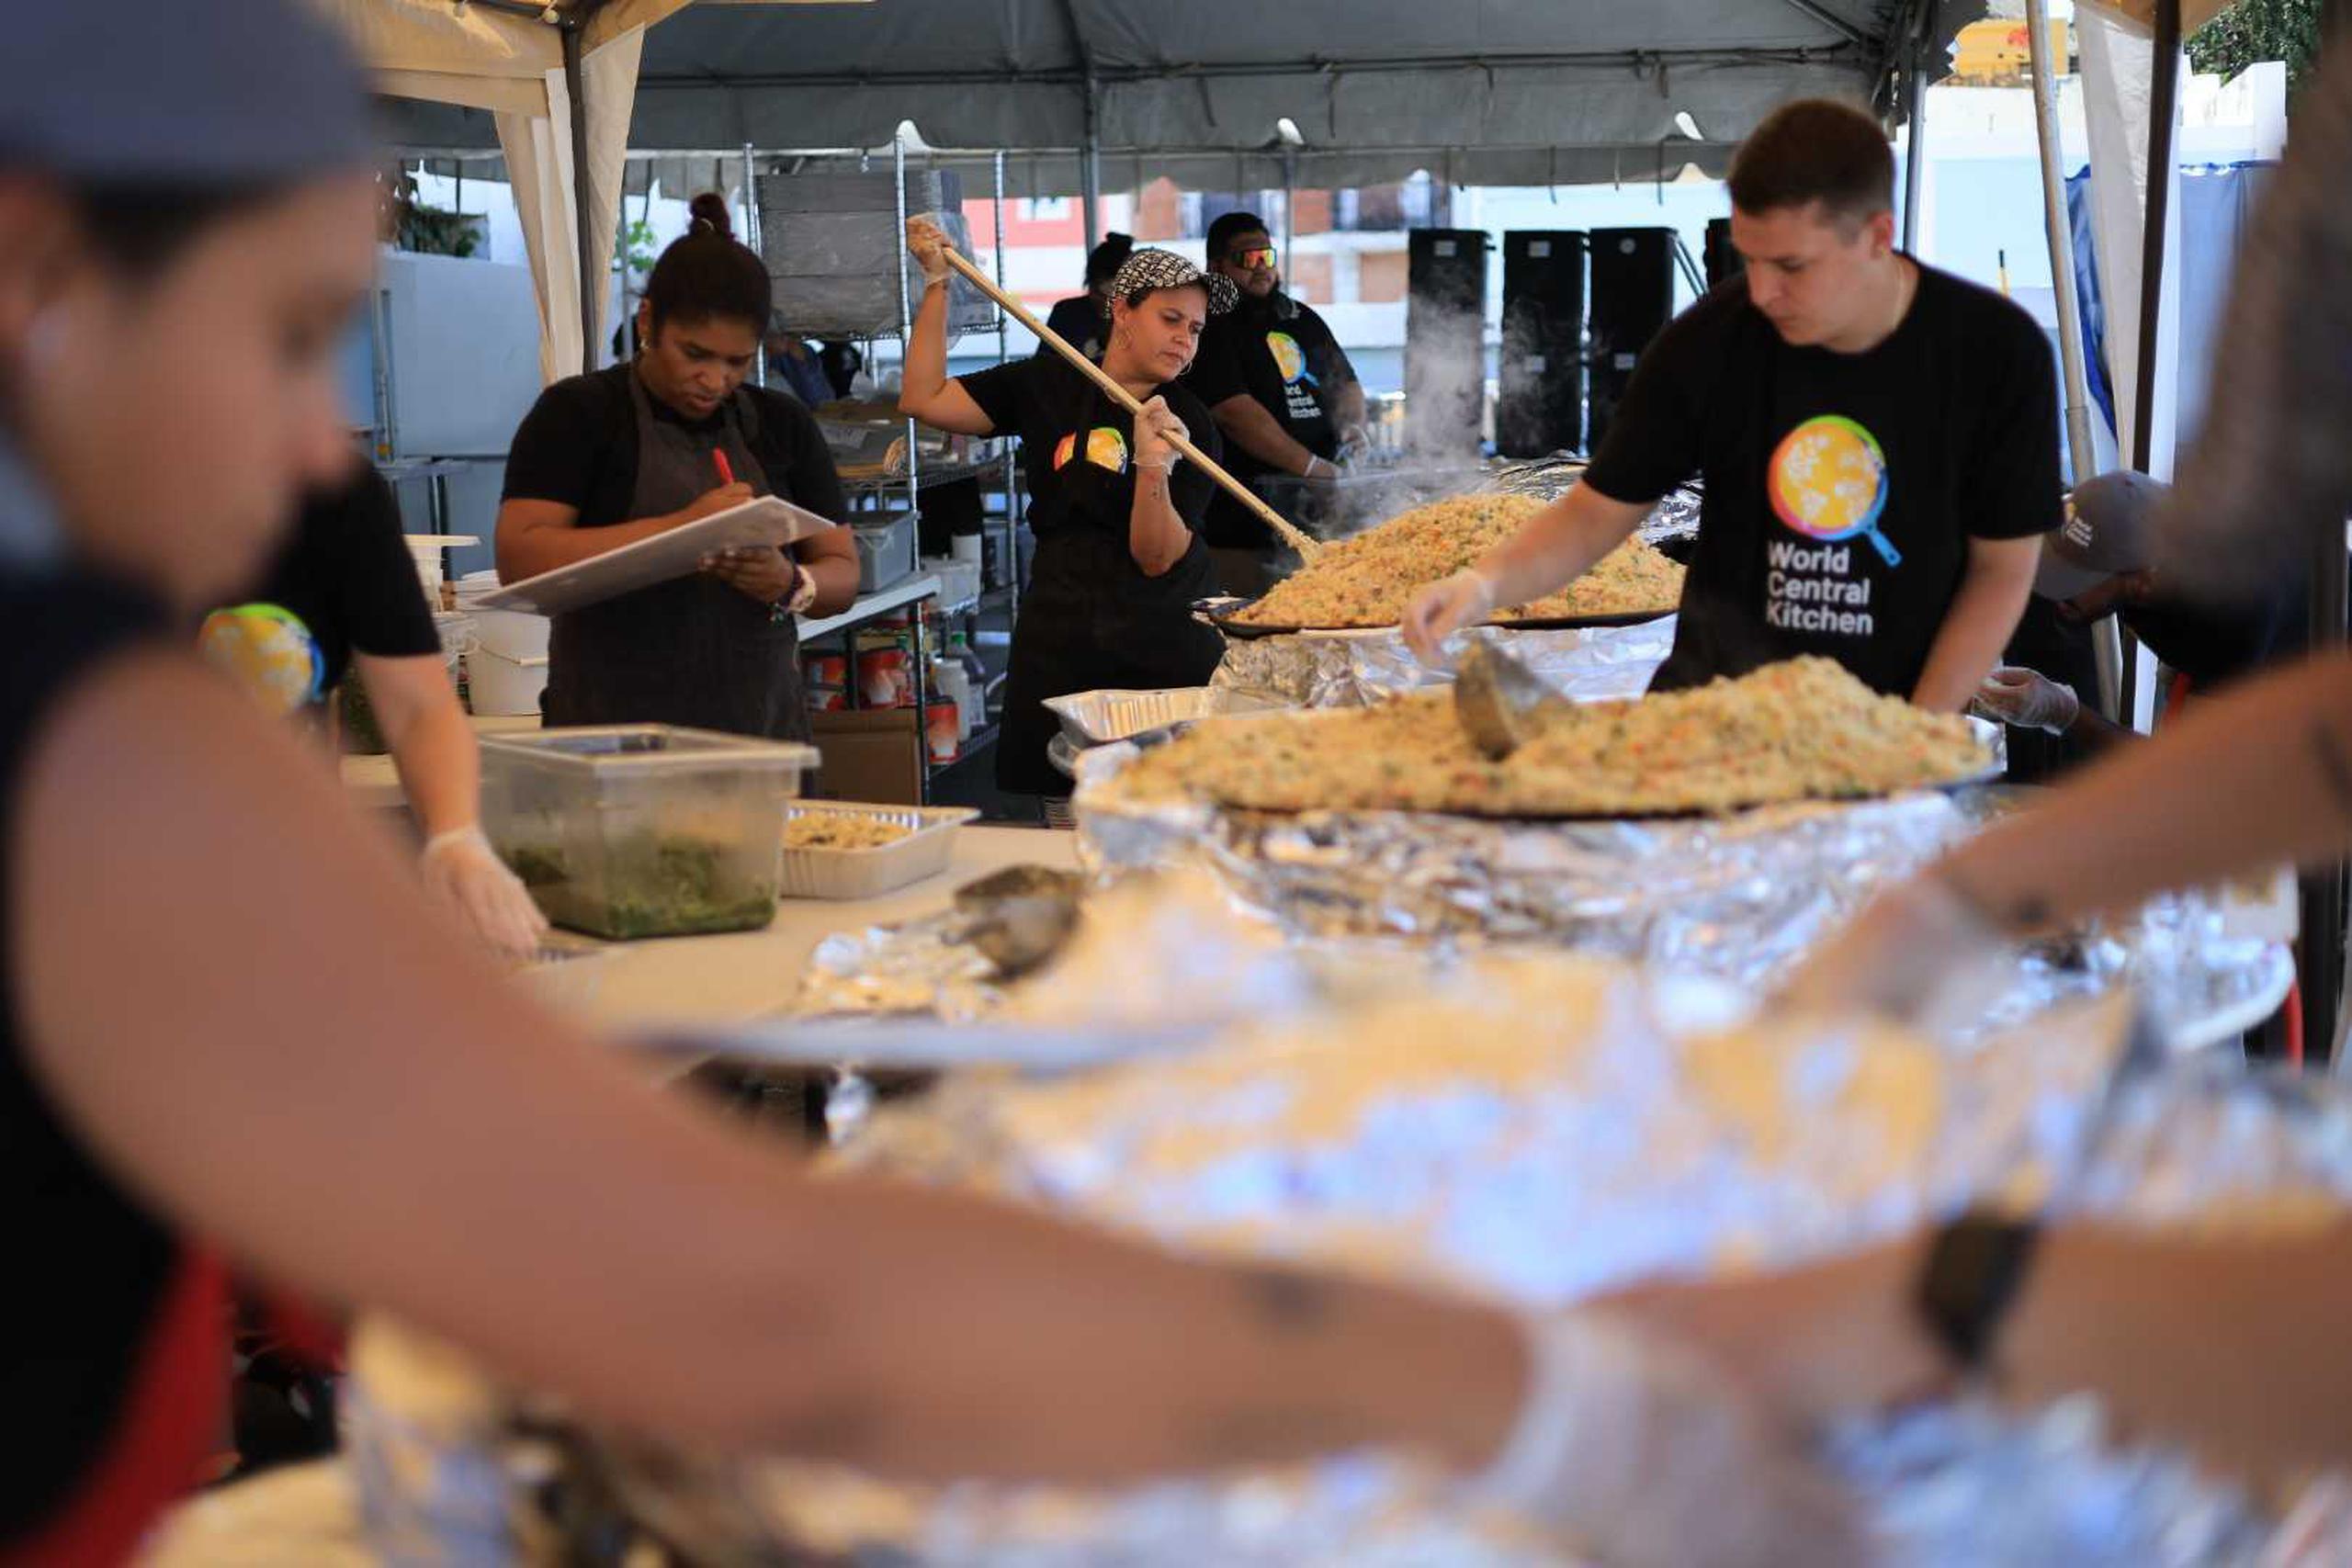 Los Centros Sor Isolina habilitaron comedores comunitarios en Ponce y Guayama, y estarán distribuyendo cerca de mil comidas calientes, a través del grupo World Central Kitchen.